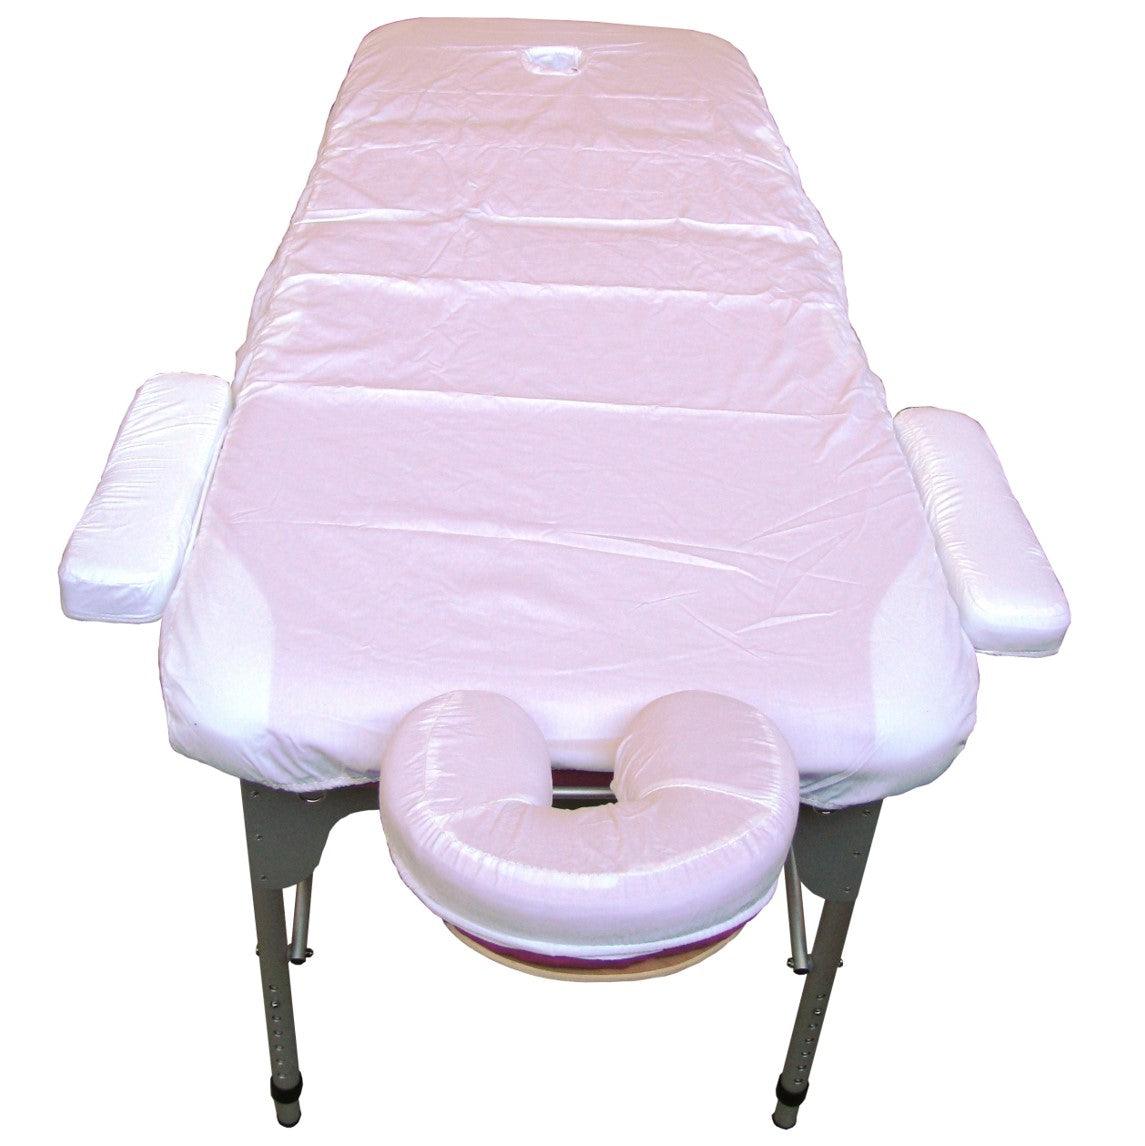 Promafit Copri lettino da massaggio impermeabile e oleorepellente in  poliuretano per lettino da massaggio con elastico – Rivestimento in PU per